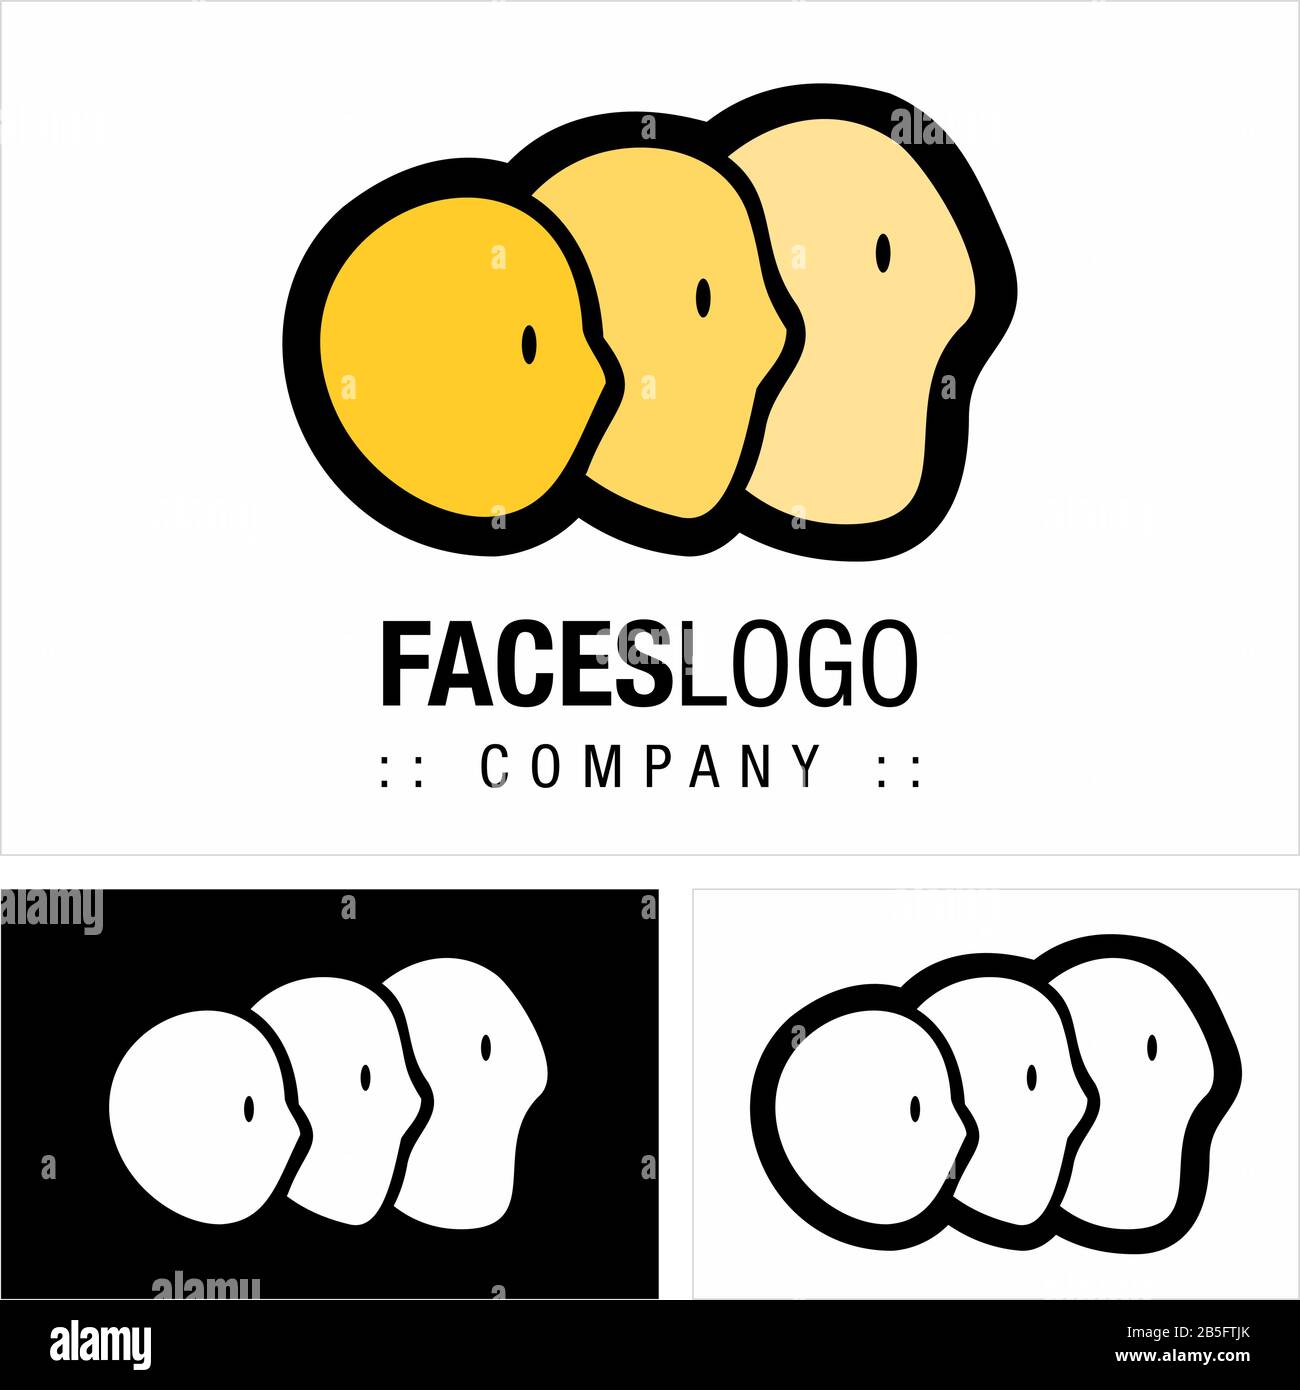 Logo (Logotipo) Di Vector Symbol Company Faces (Profilo). Persone, Persone, Testa, Crescita, Sviluppo, Maturità Icona Illustrazione. Elegante e Moderno. Illustrazione Vettoriale